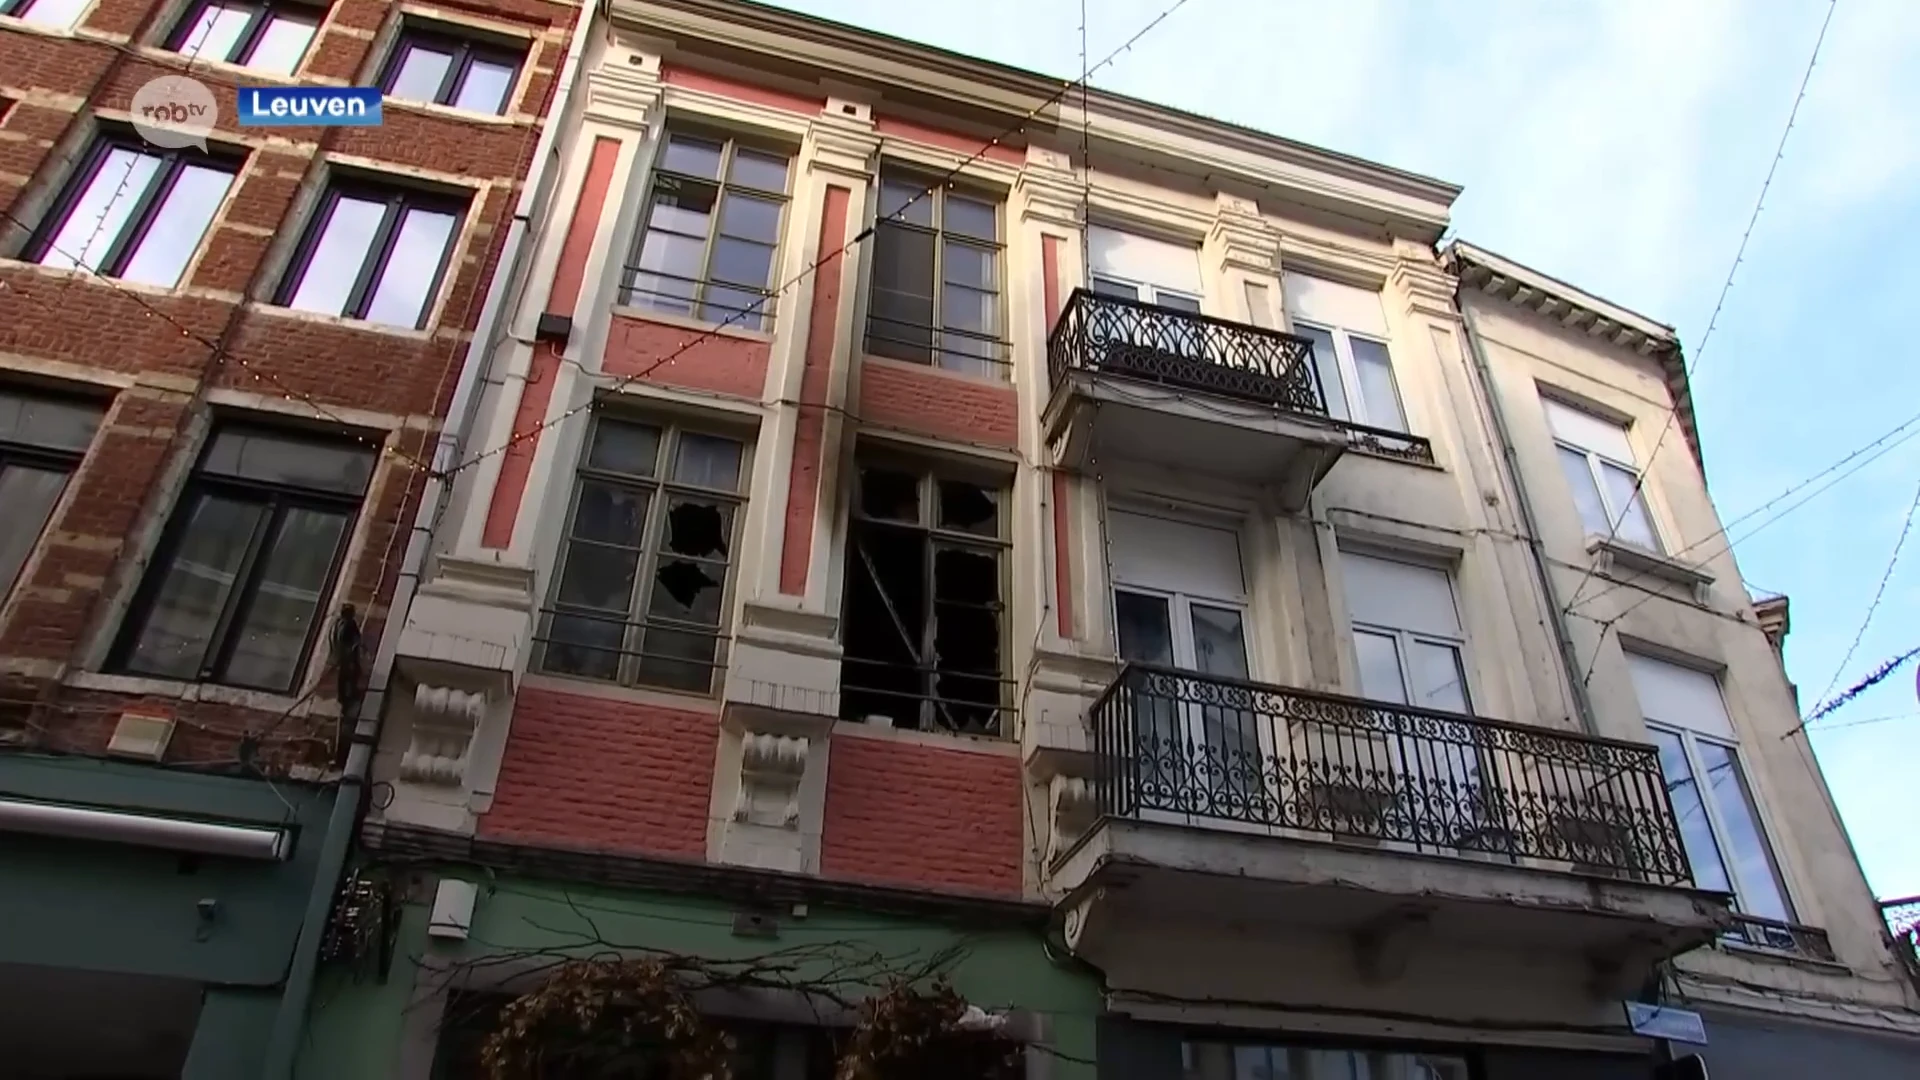 Appartement in Leuven afgebrand door kaars te dicht bij gordijn